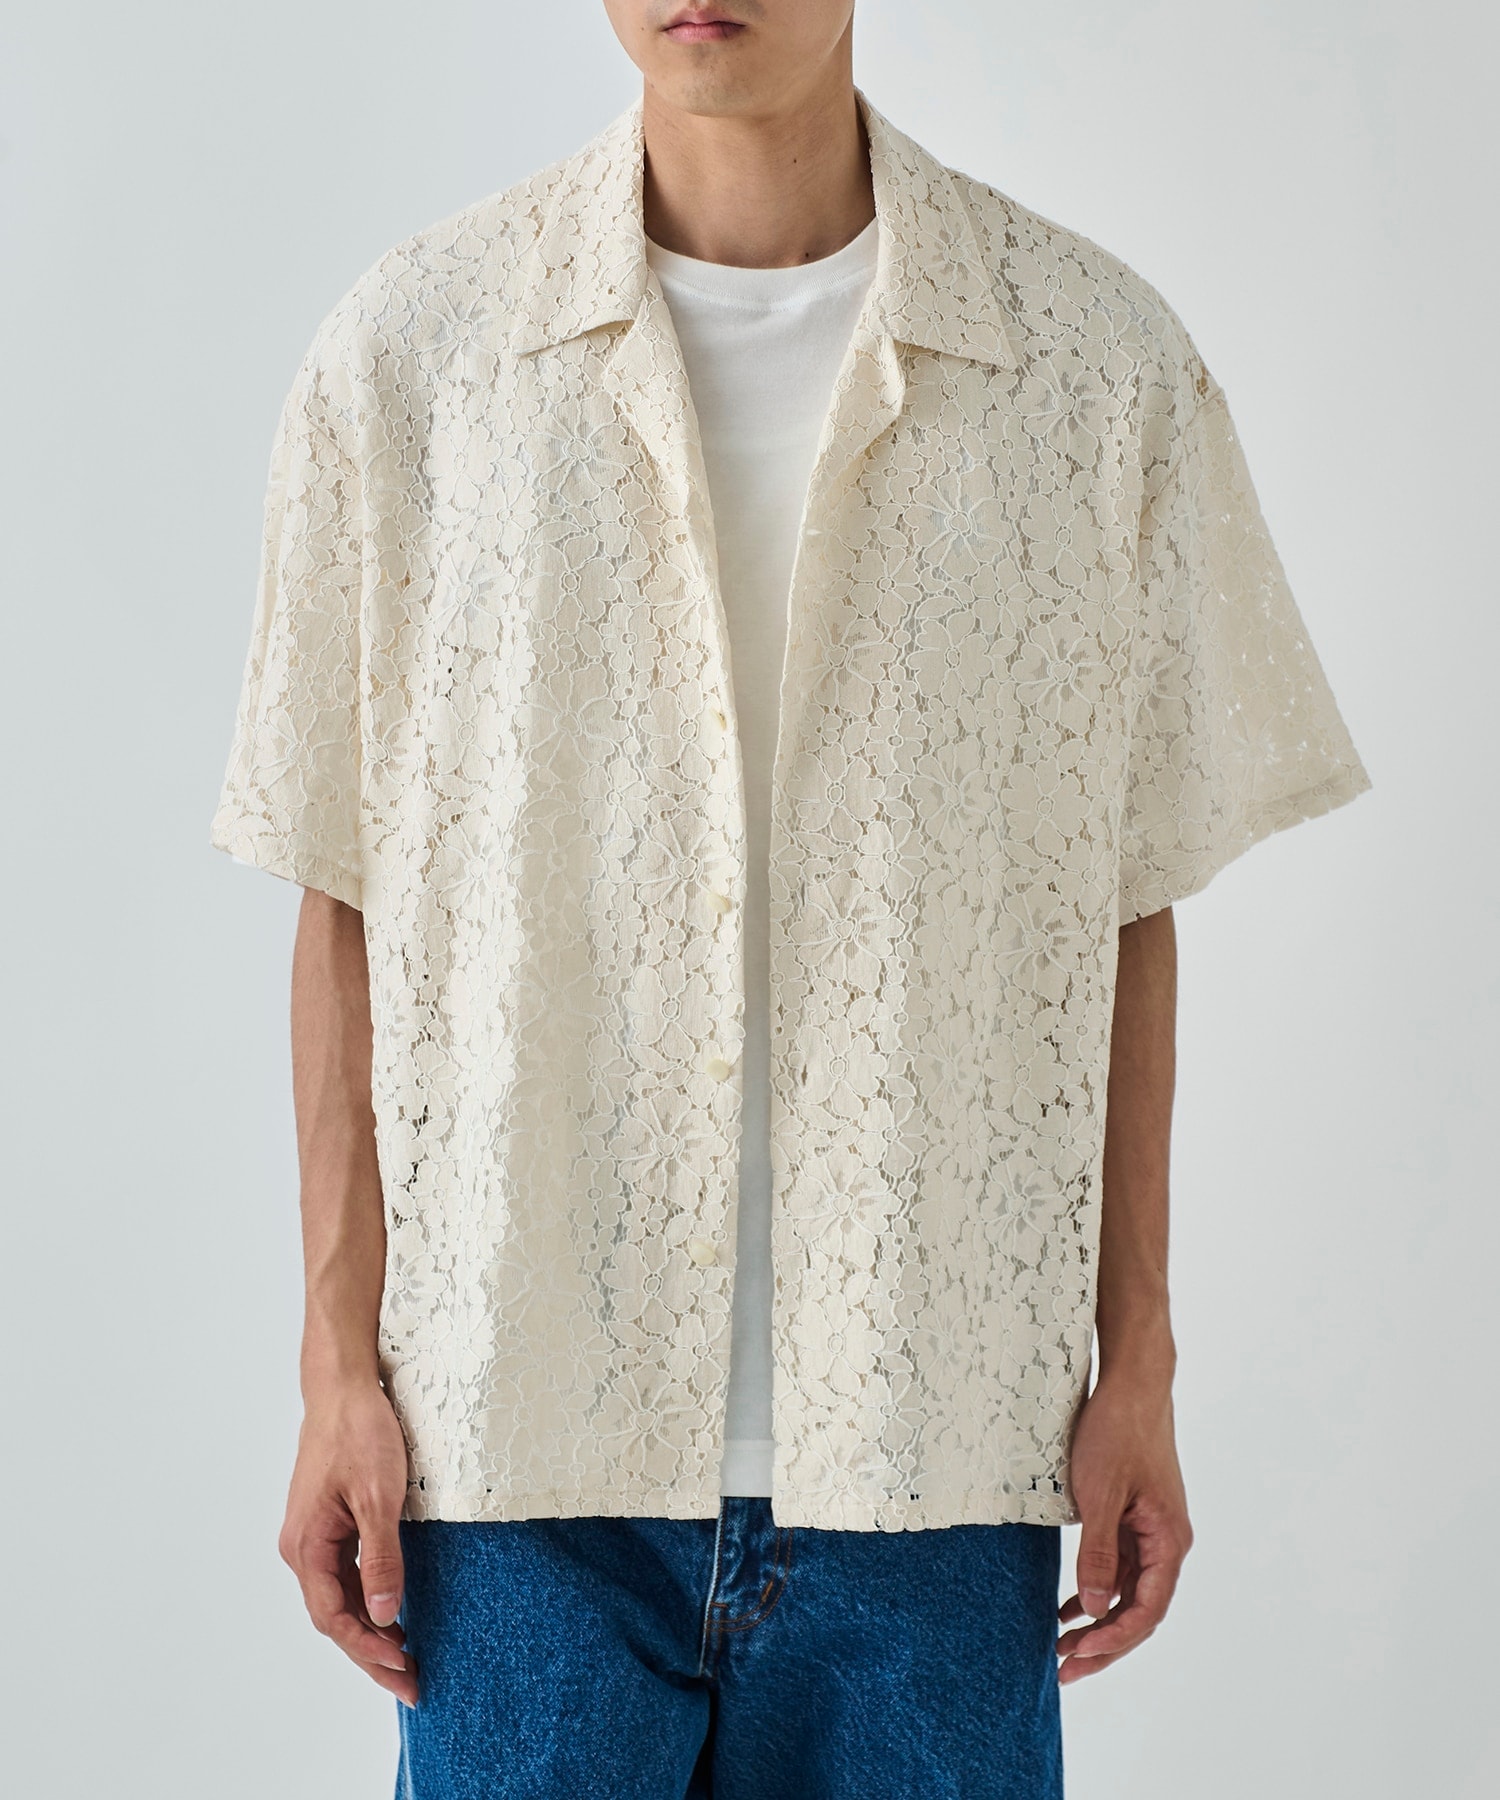 Aloha shirt-Flower lace